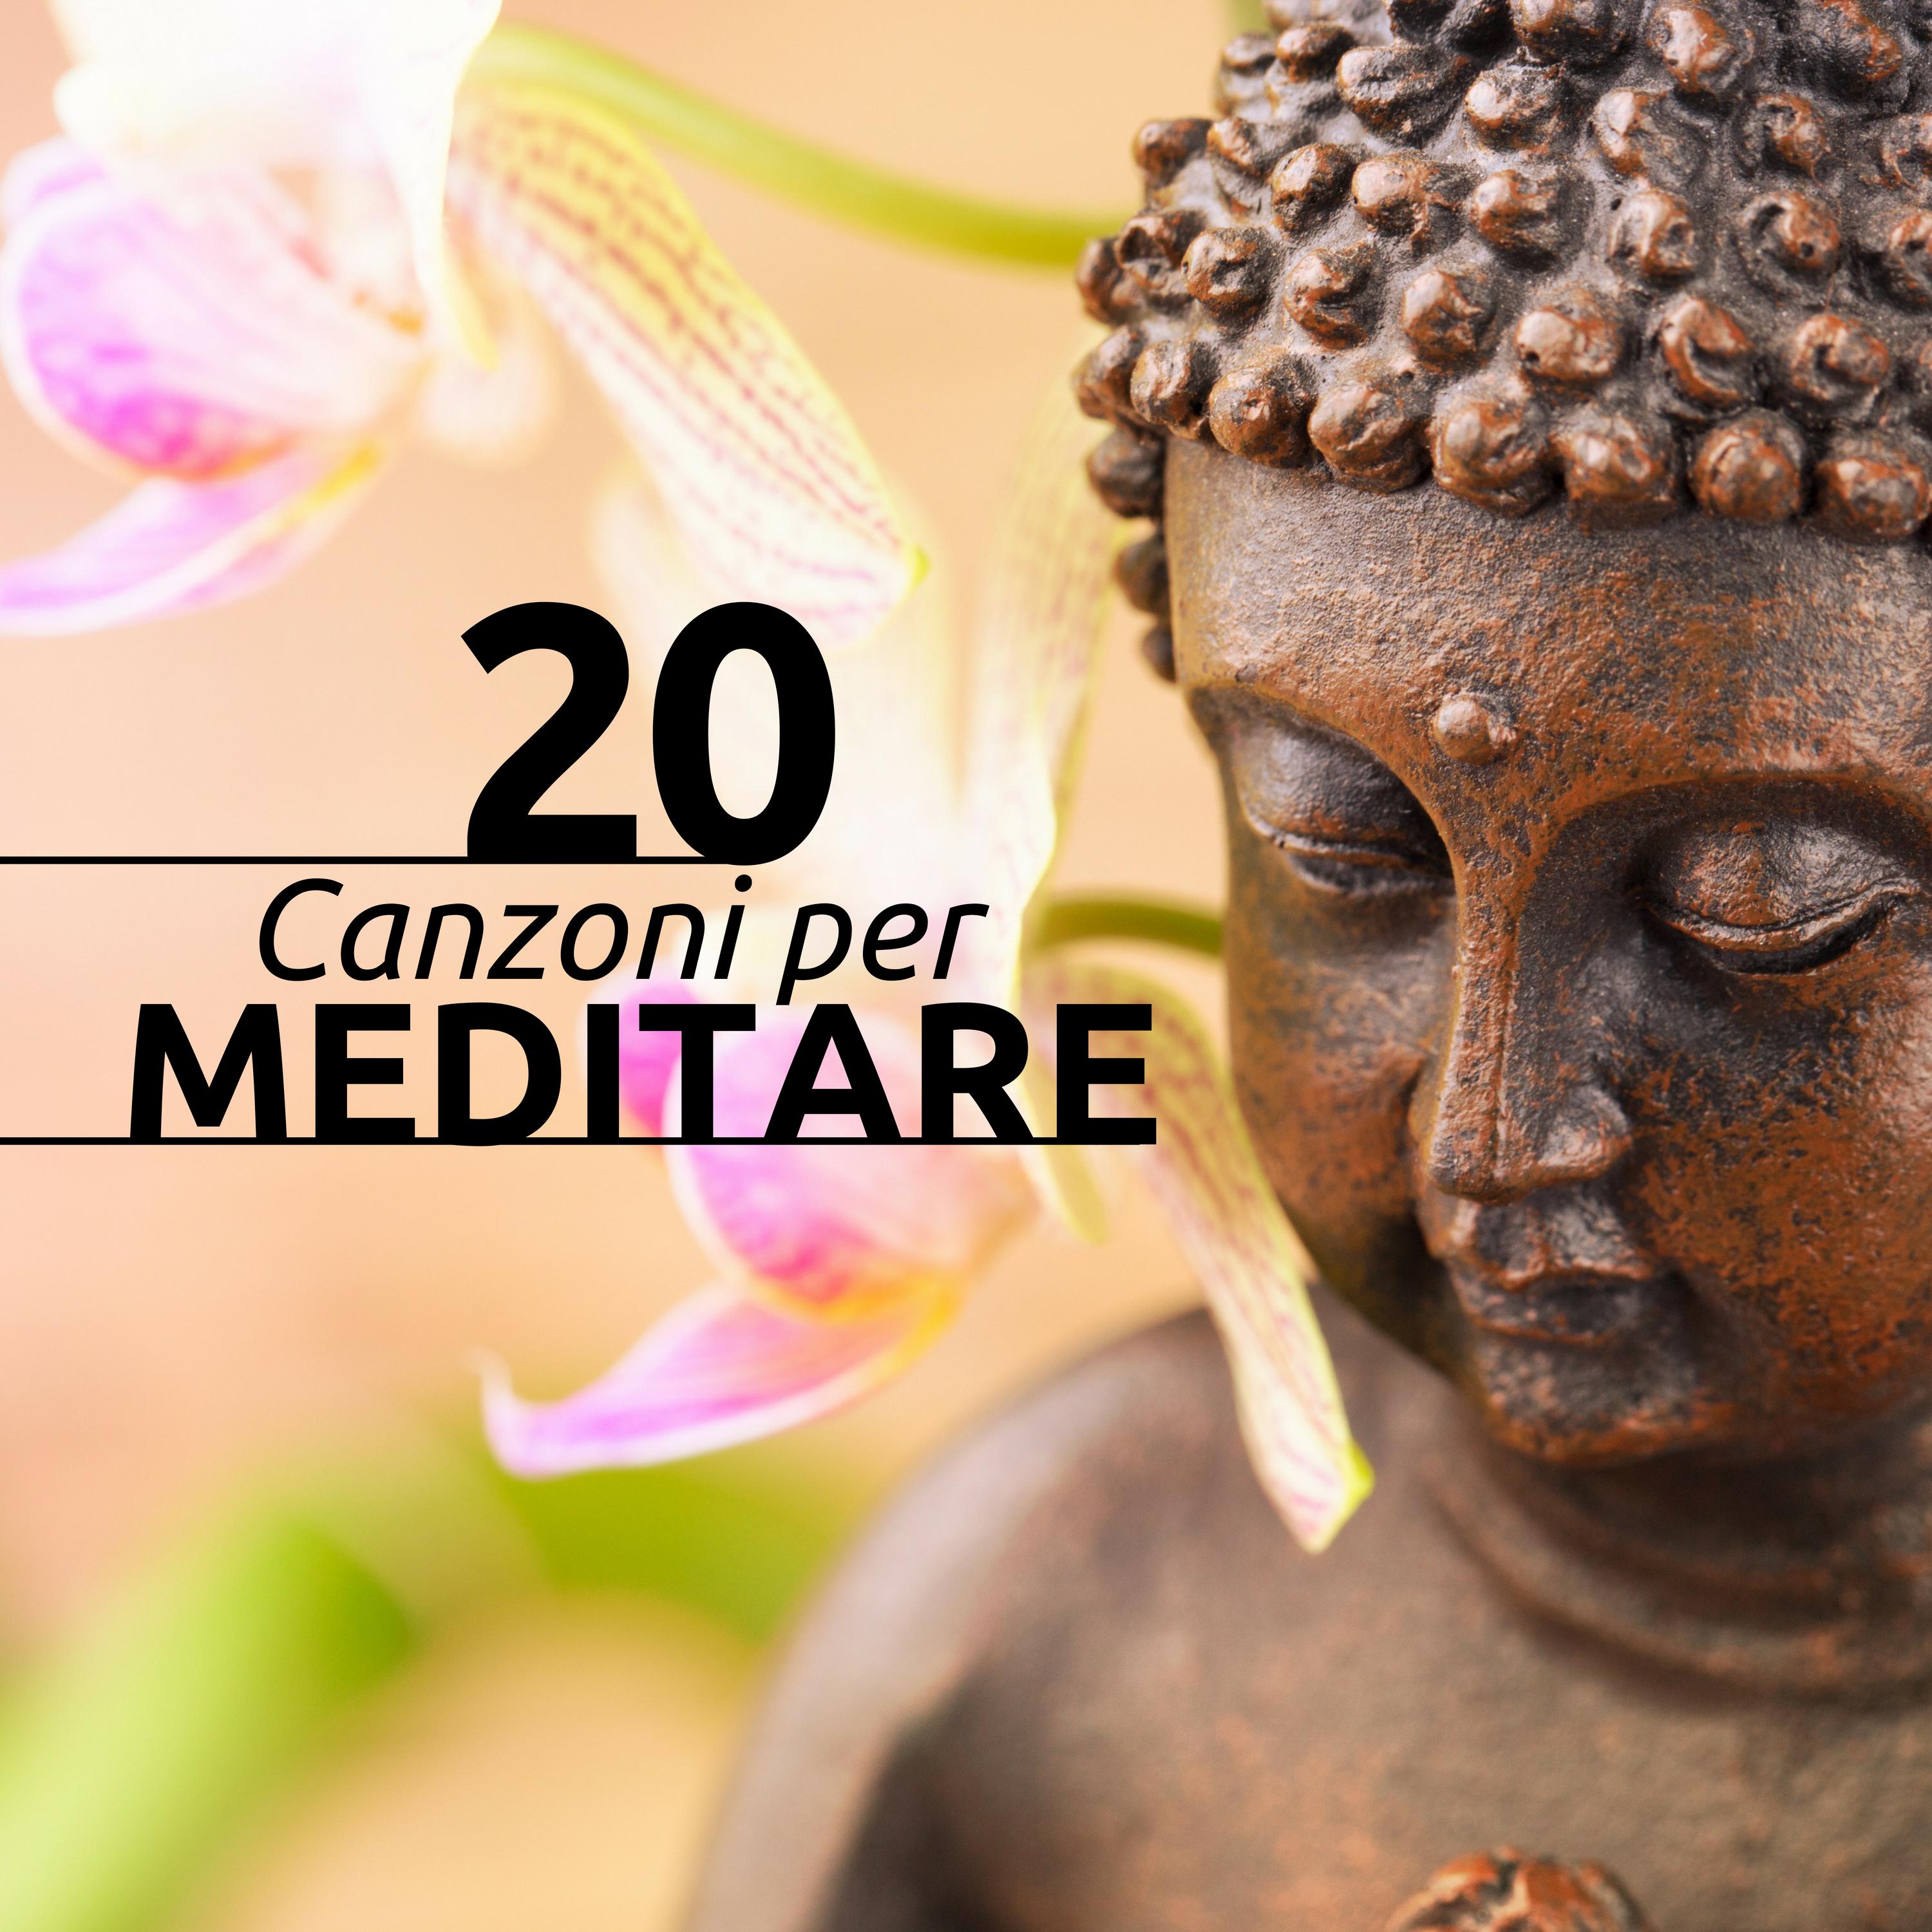 20 Canzoni per Meditare: Trovare Pace, Serenità, Forza Interiore, Felicità